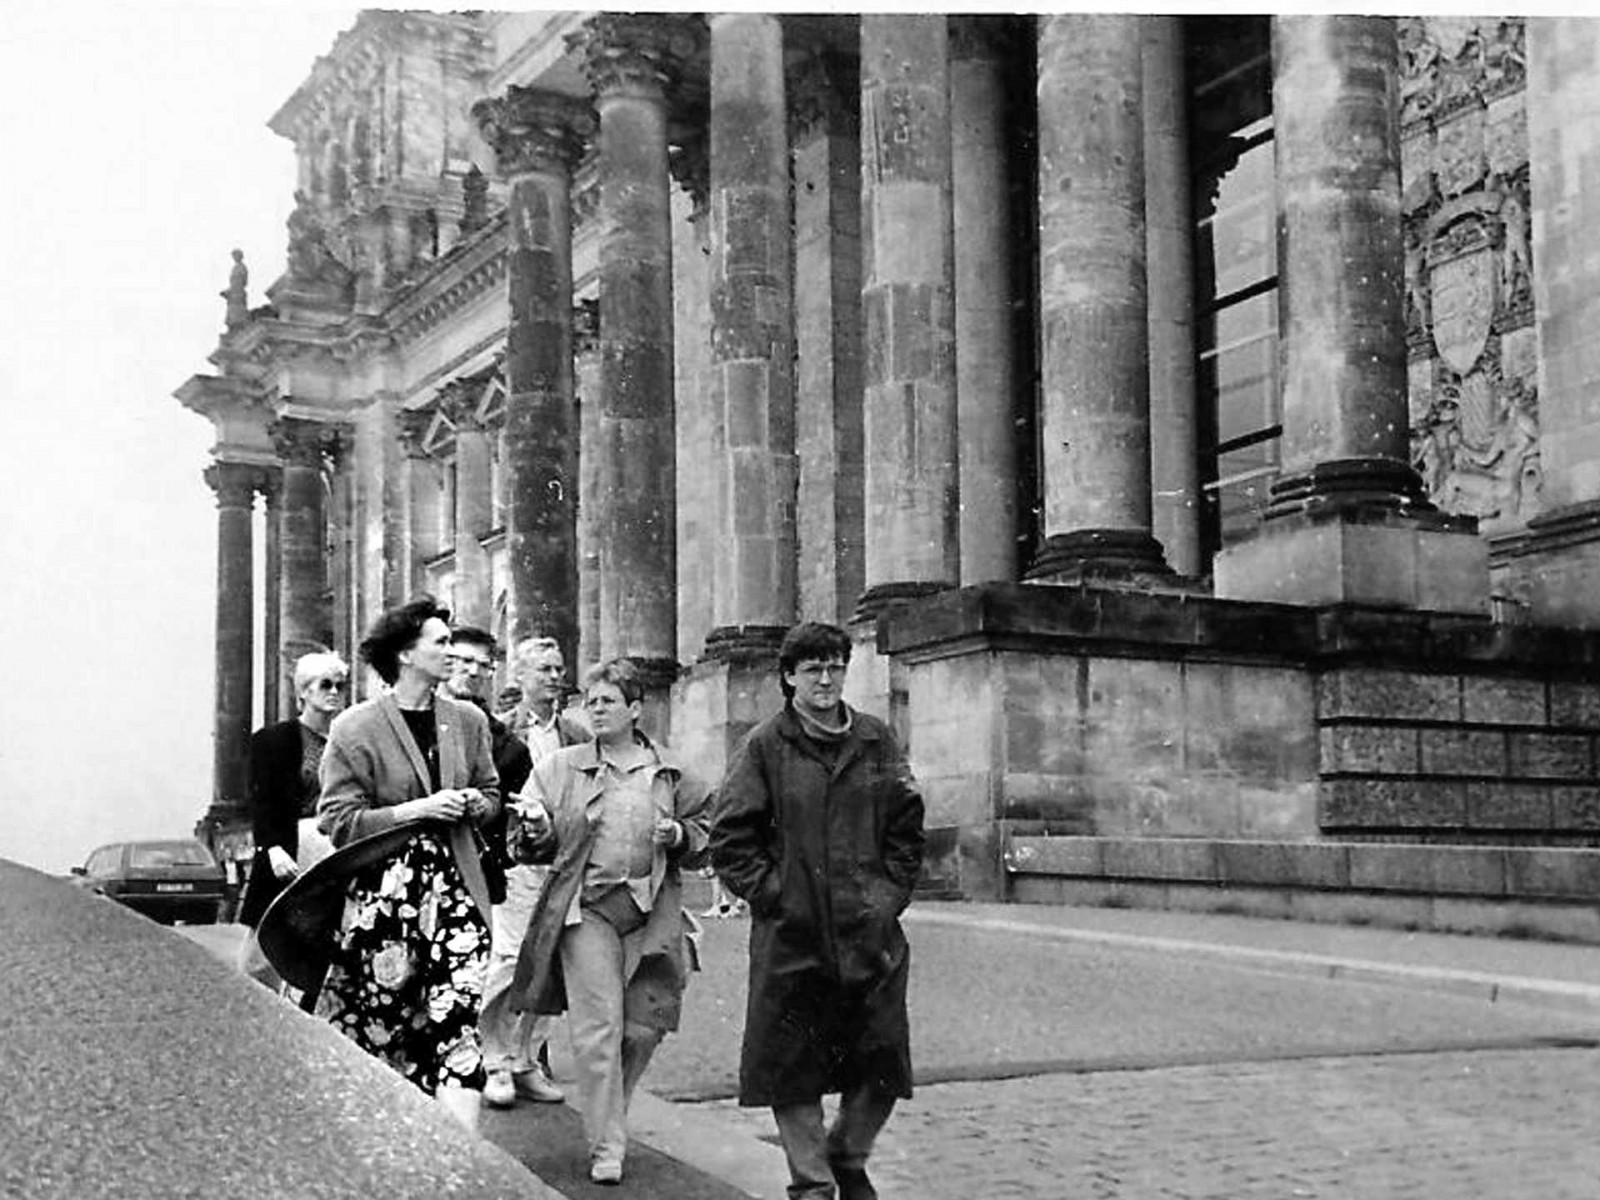  Ирина Пахомова (слева на фото) во время съемок в Берлине (период  падения Берлинской стены). Октябрь - ноябрь 1989 года. Фото из личного архива.